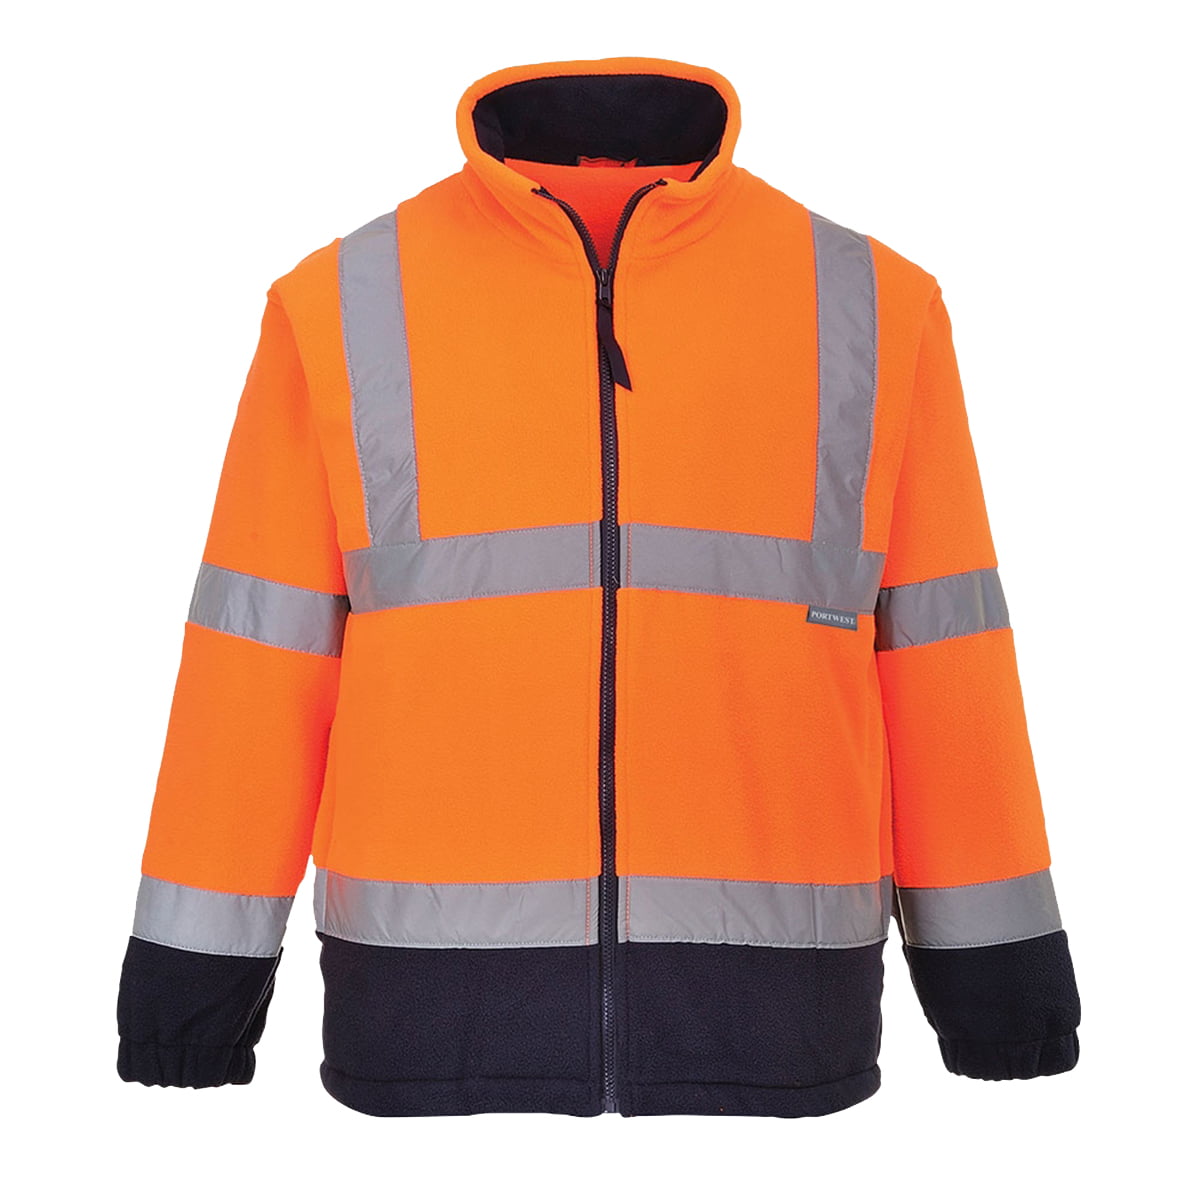 Mens Hi Vis Viz Visibility Premium Safety Work Fleece Lined Work Fleece Jacket